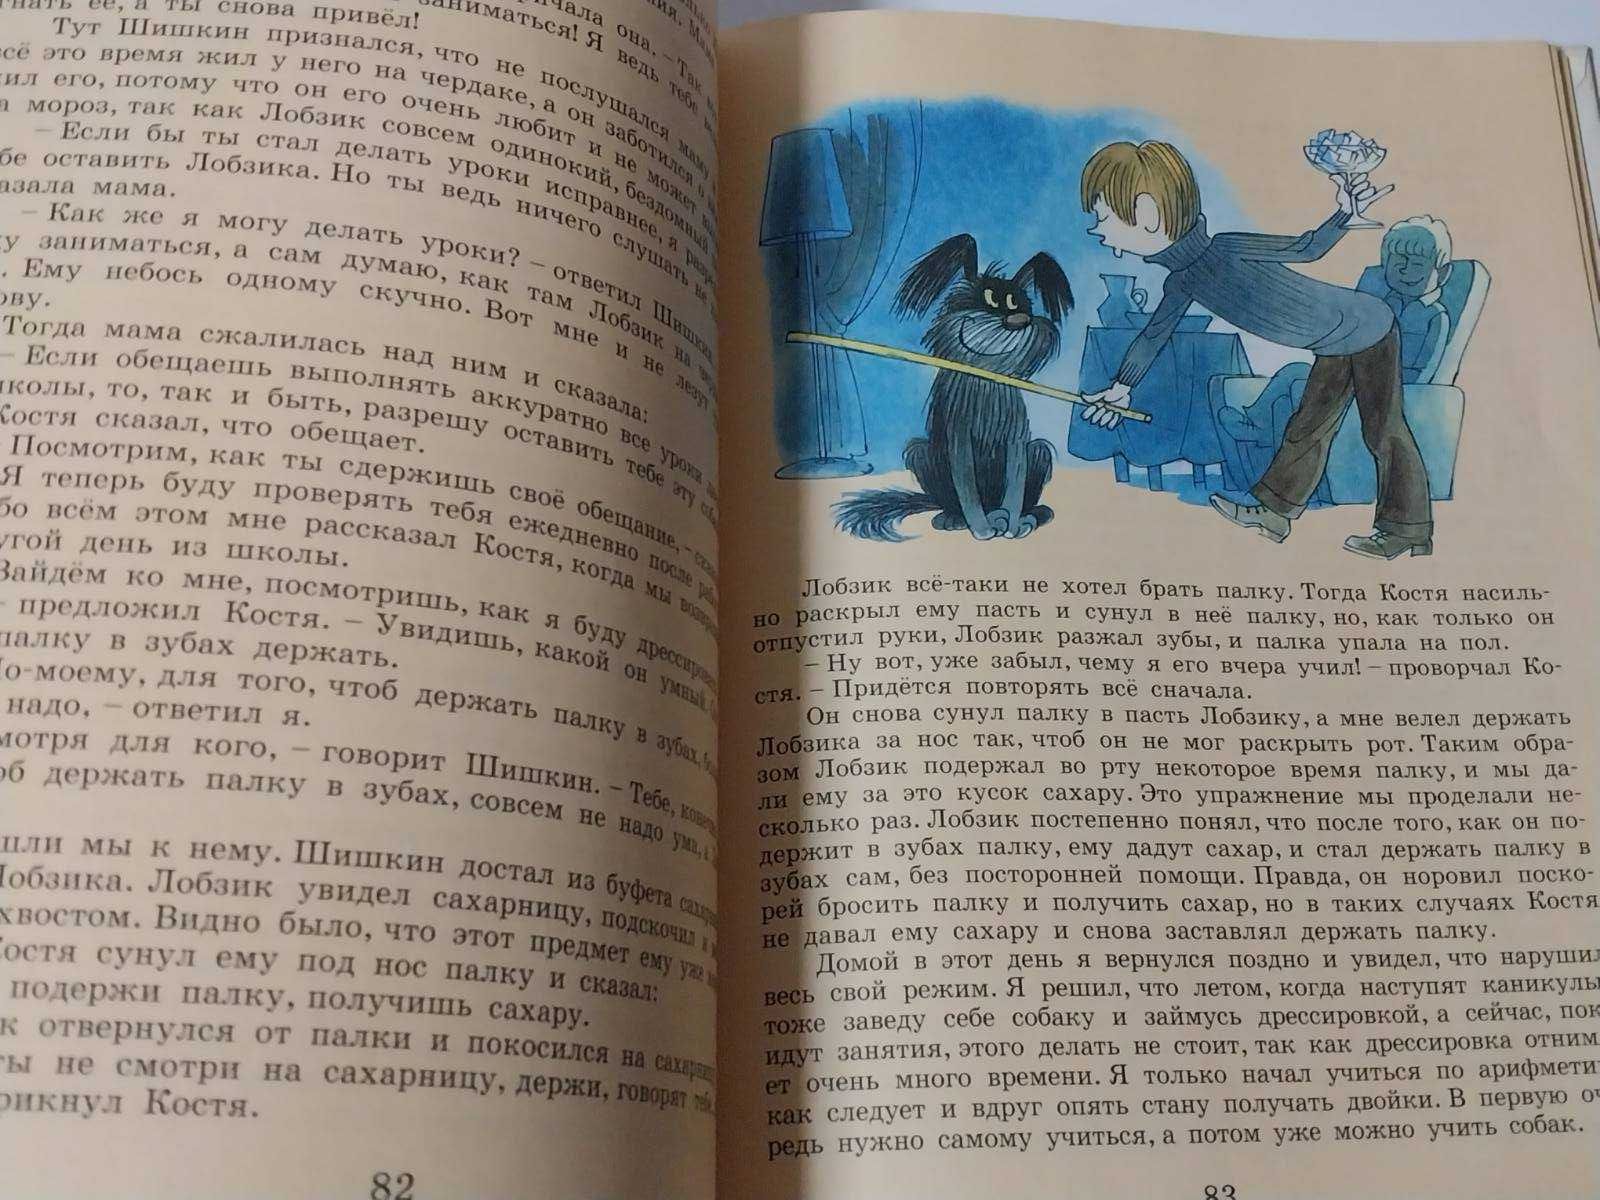 Детская книга Носов Витя Малеев в школе и дома (худ Чижиков)